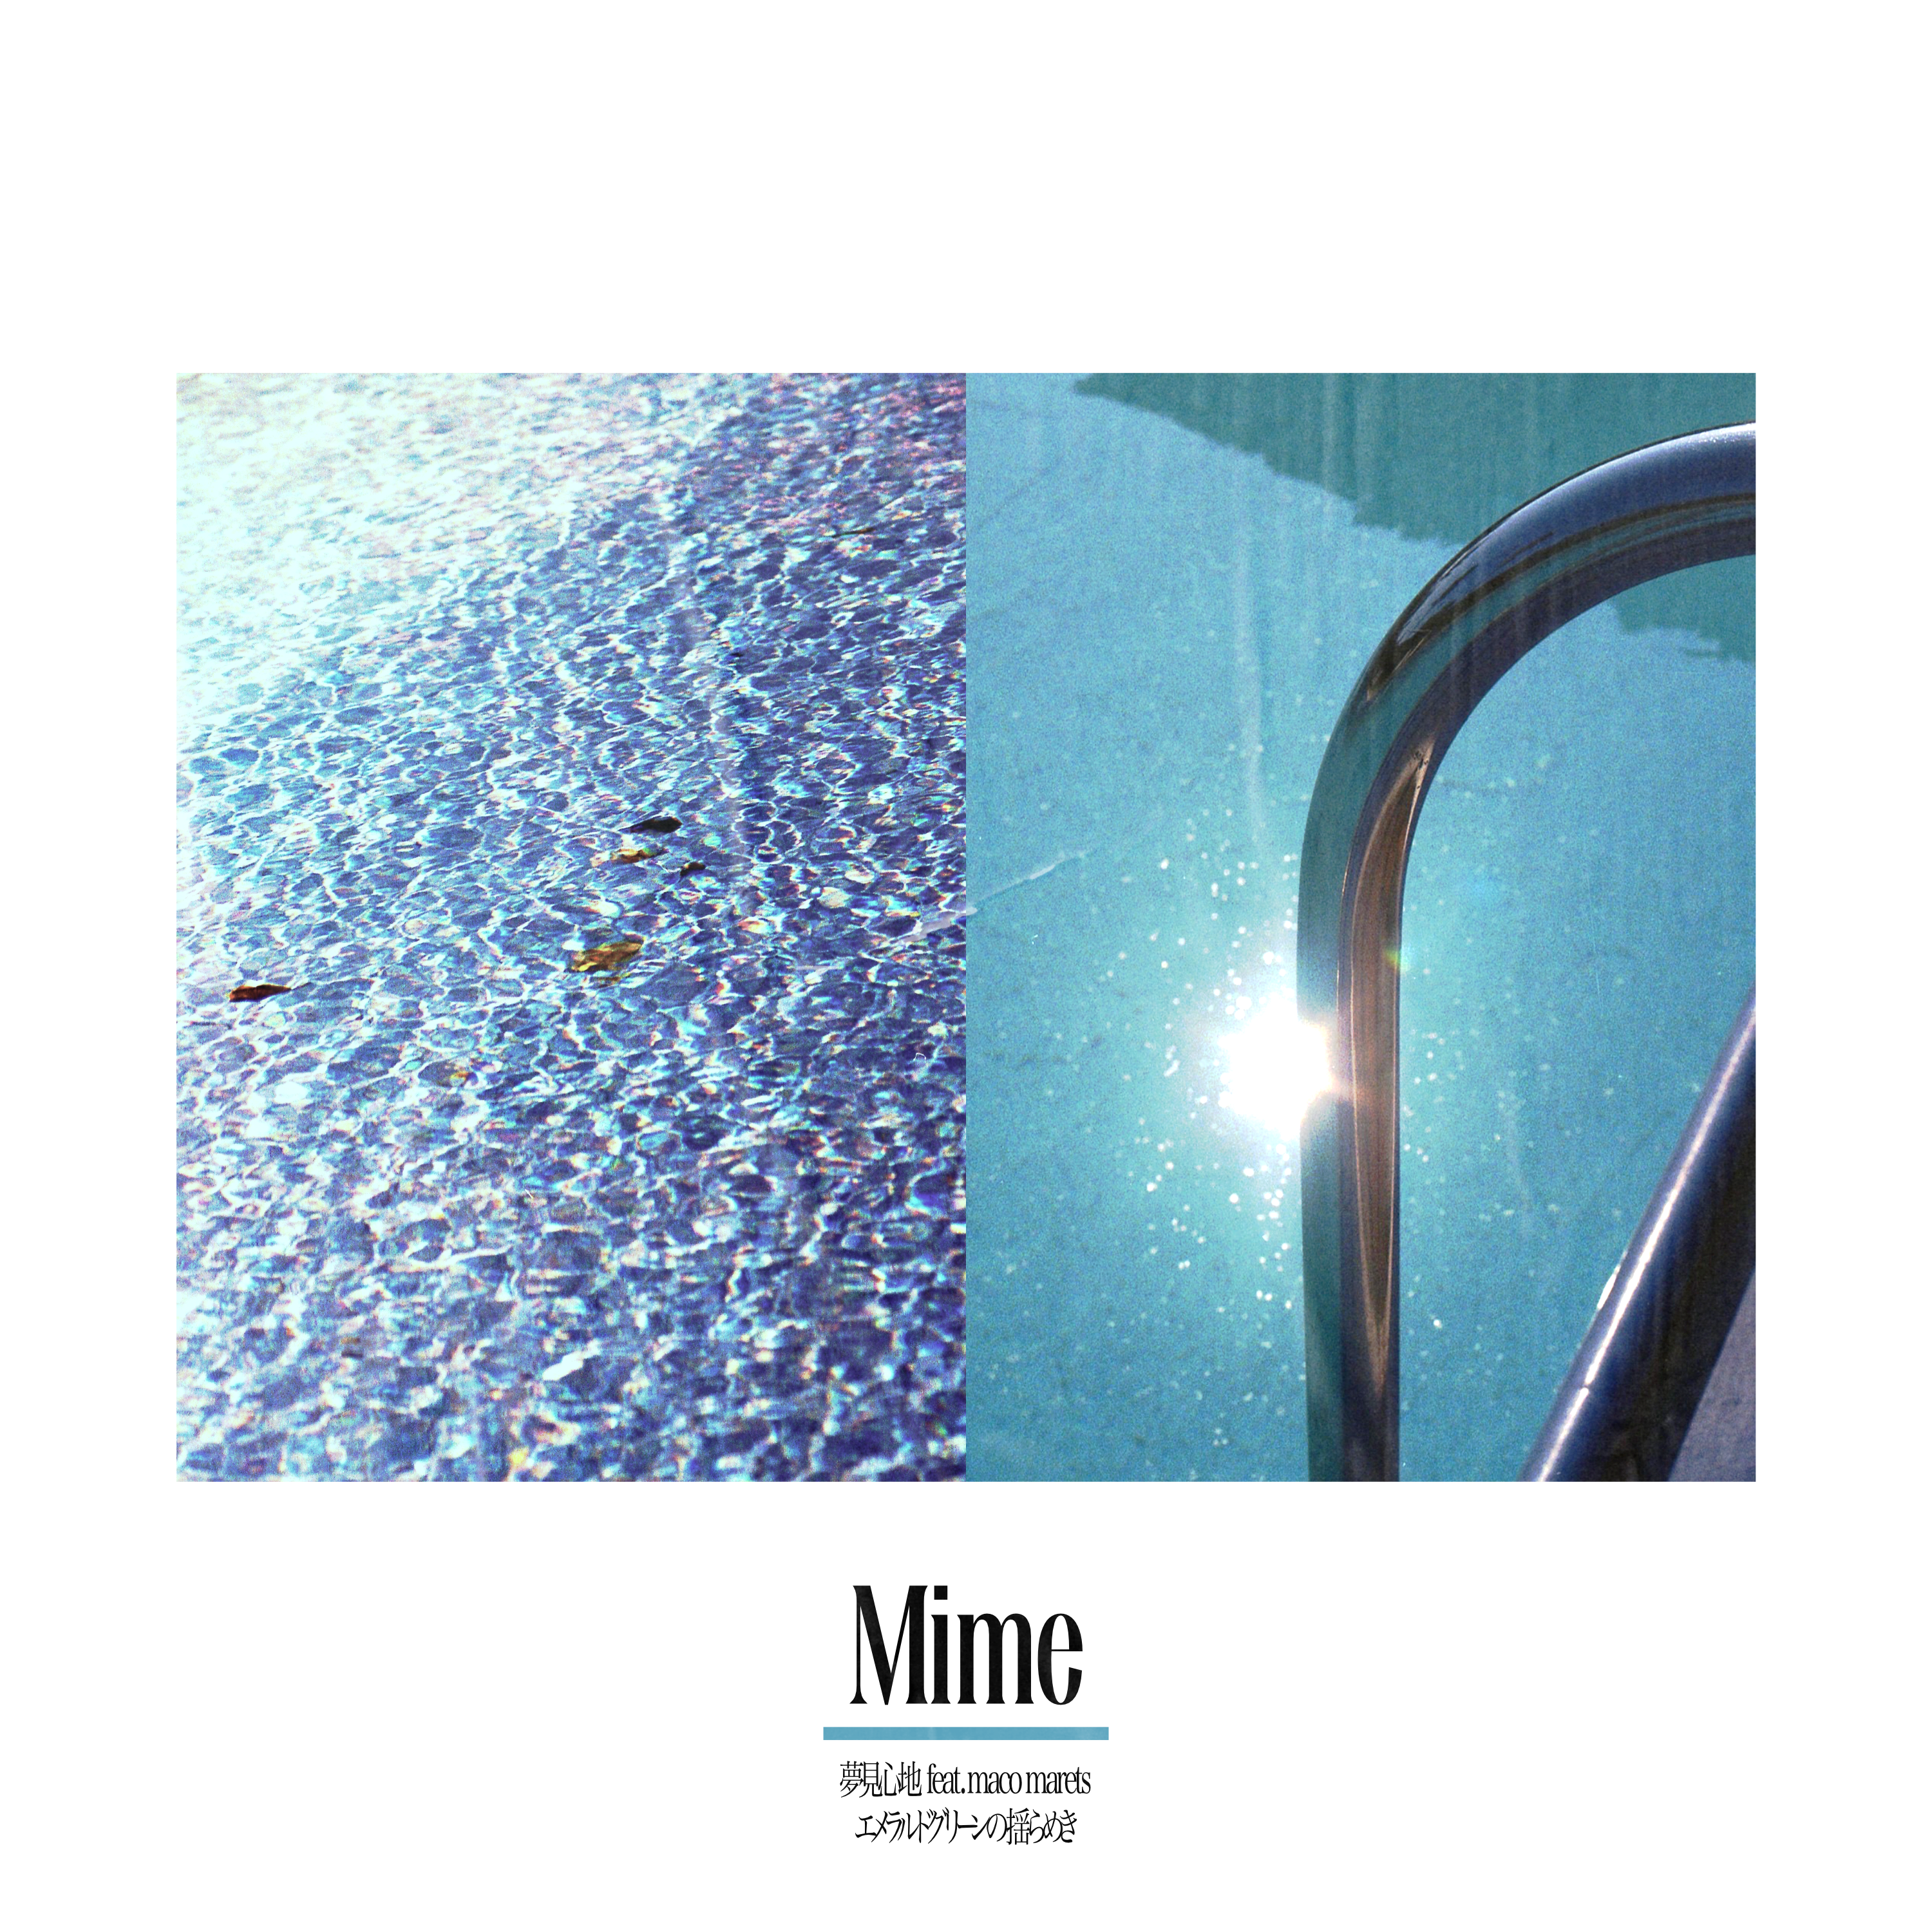 Mime – 夢見心地 feat. maco marets / エメラルドグリーンの揺らめき